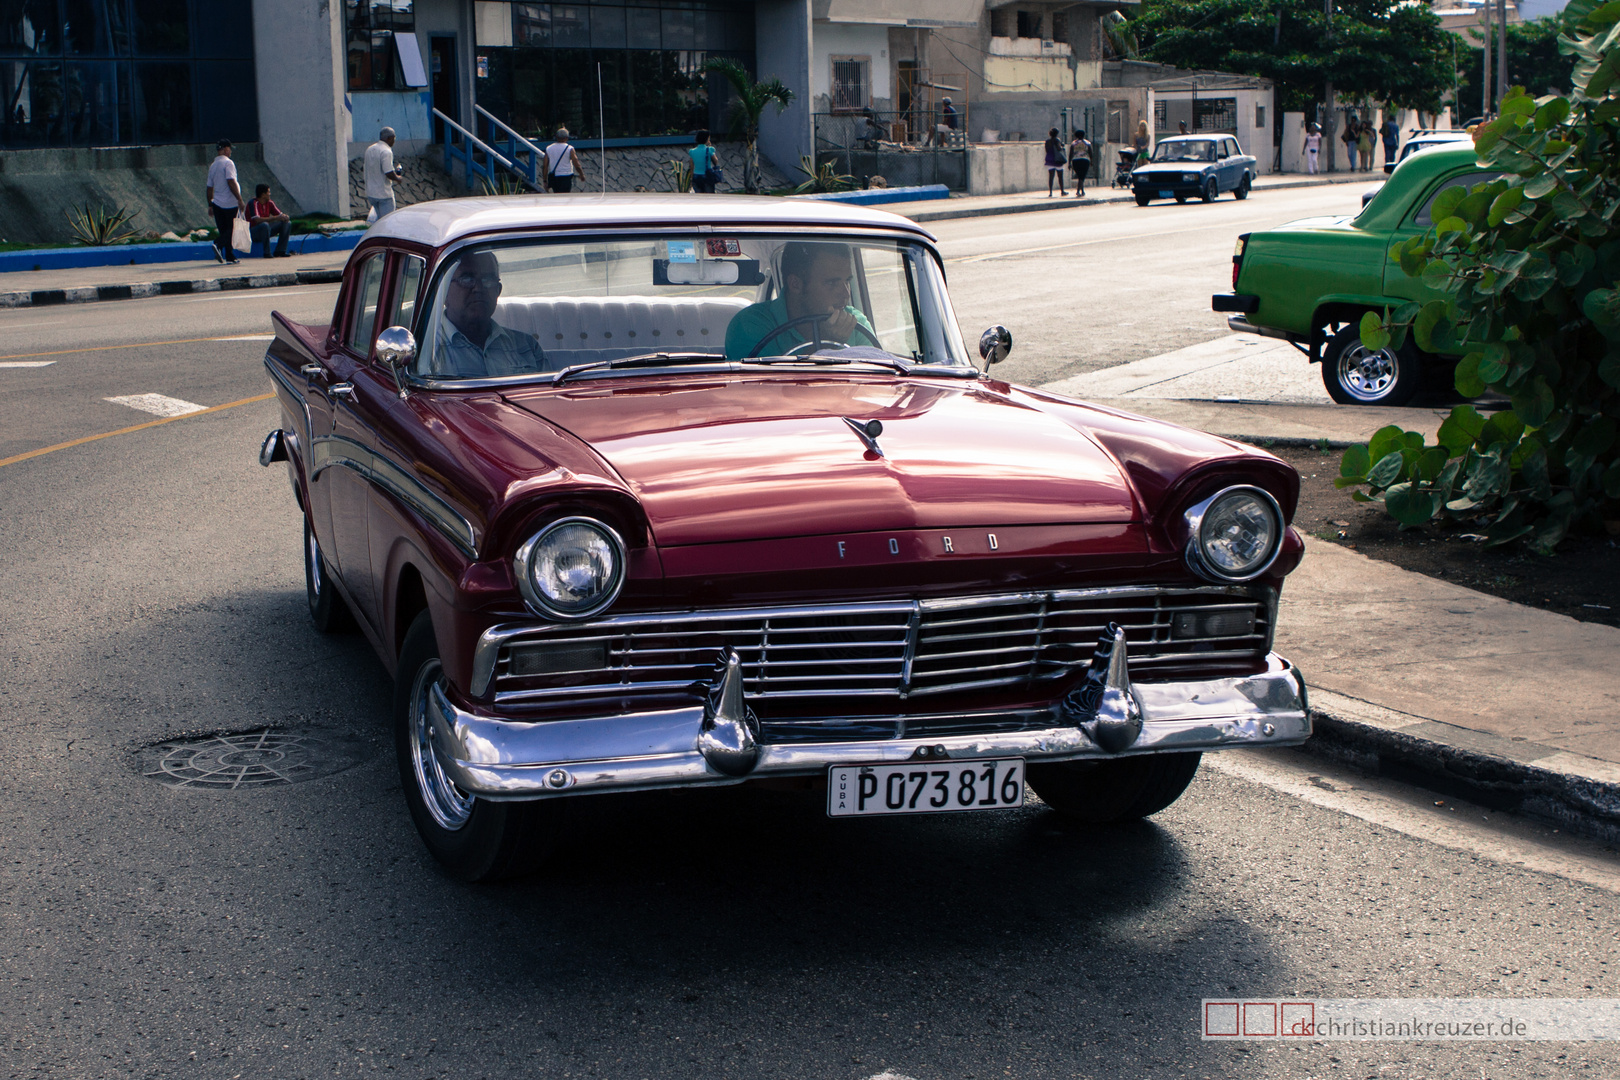 Auto in Havanna